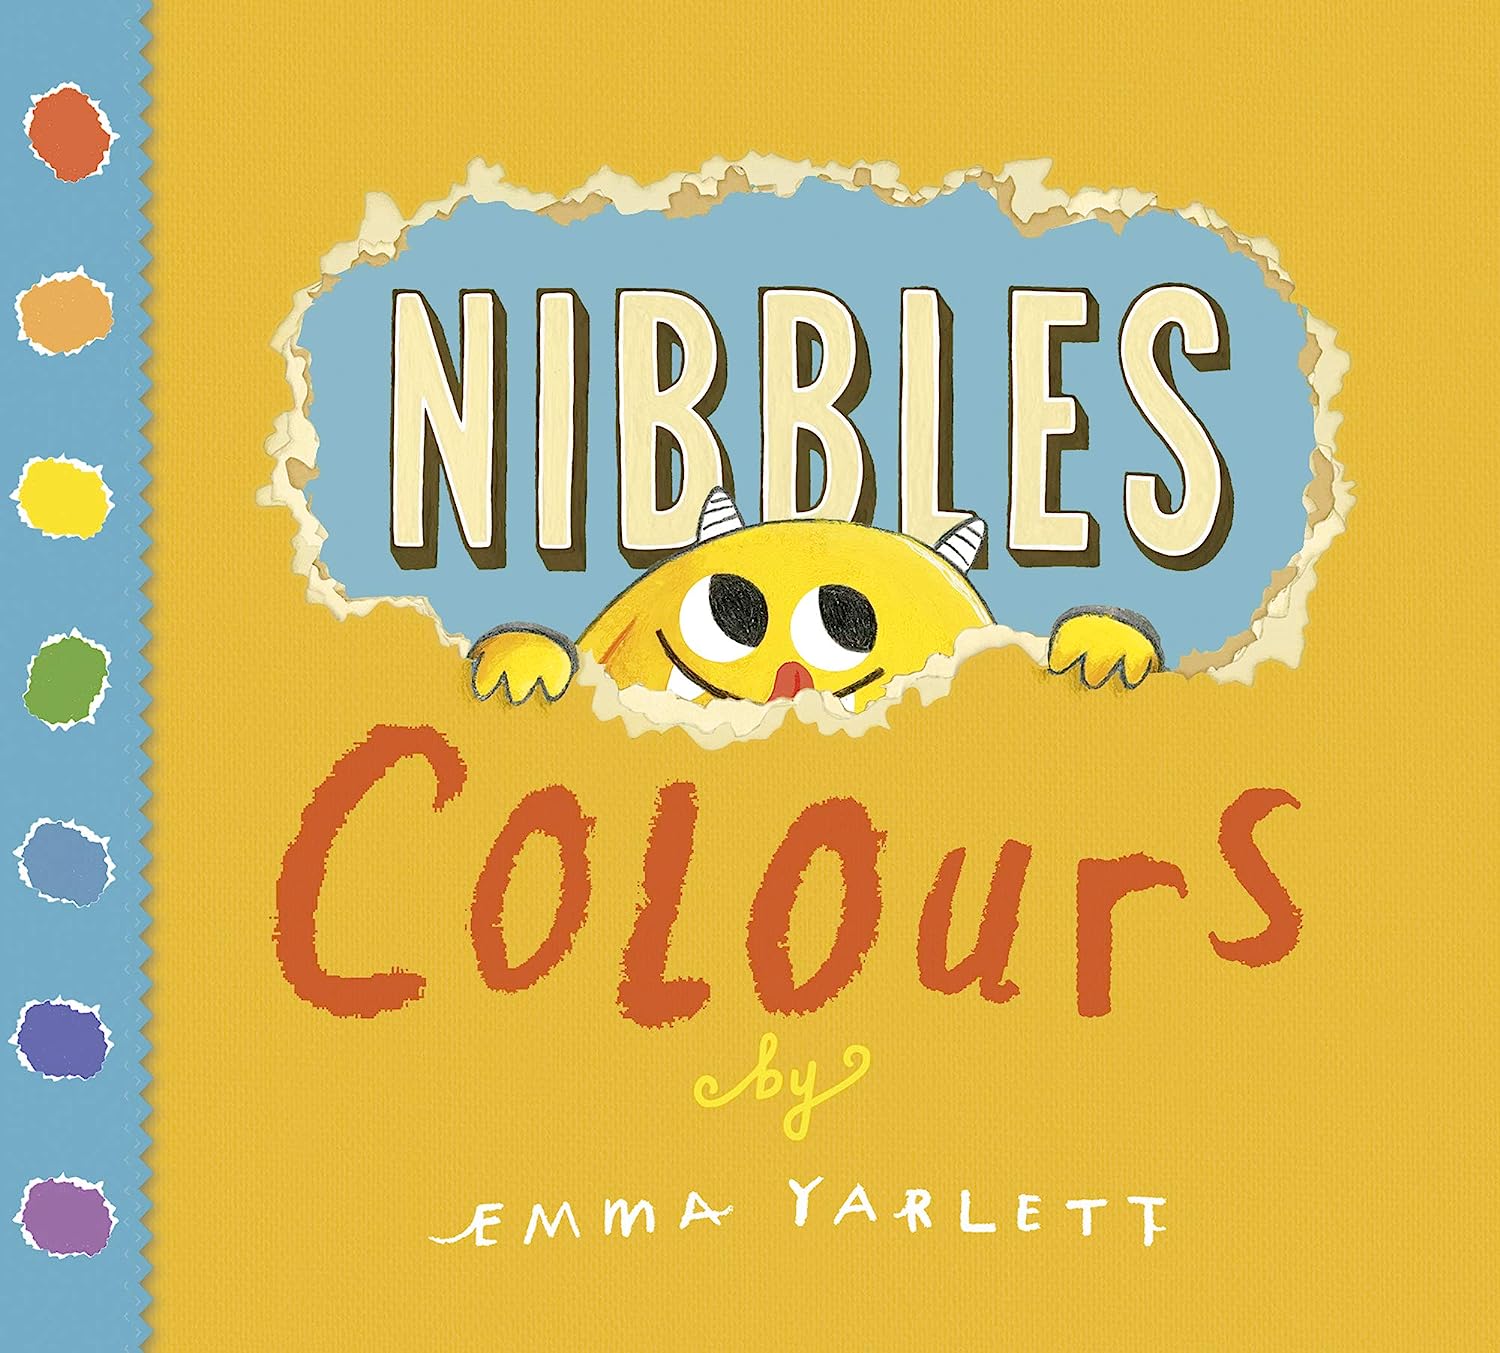 Nibbles Colours